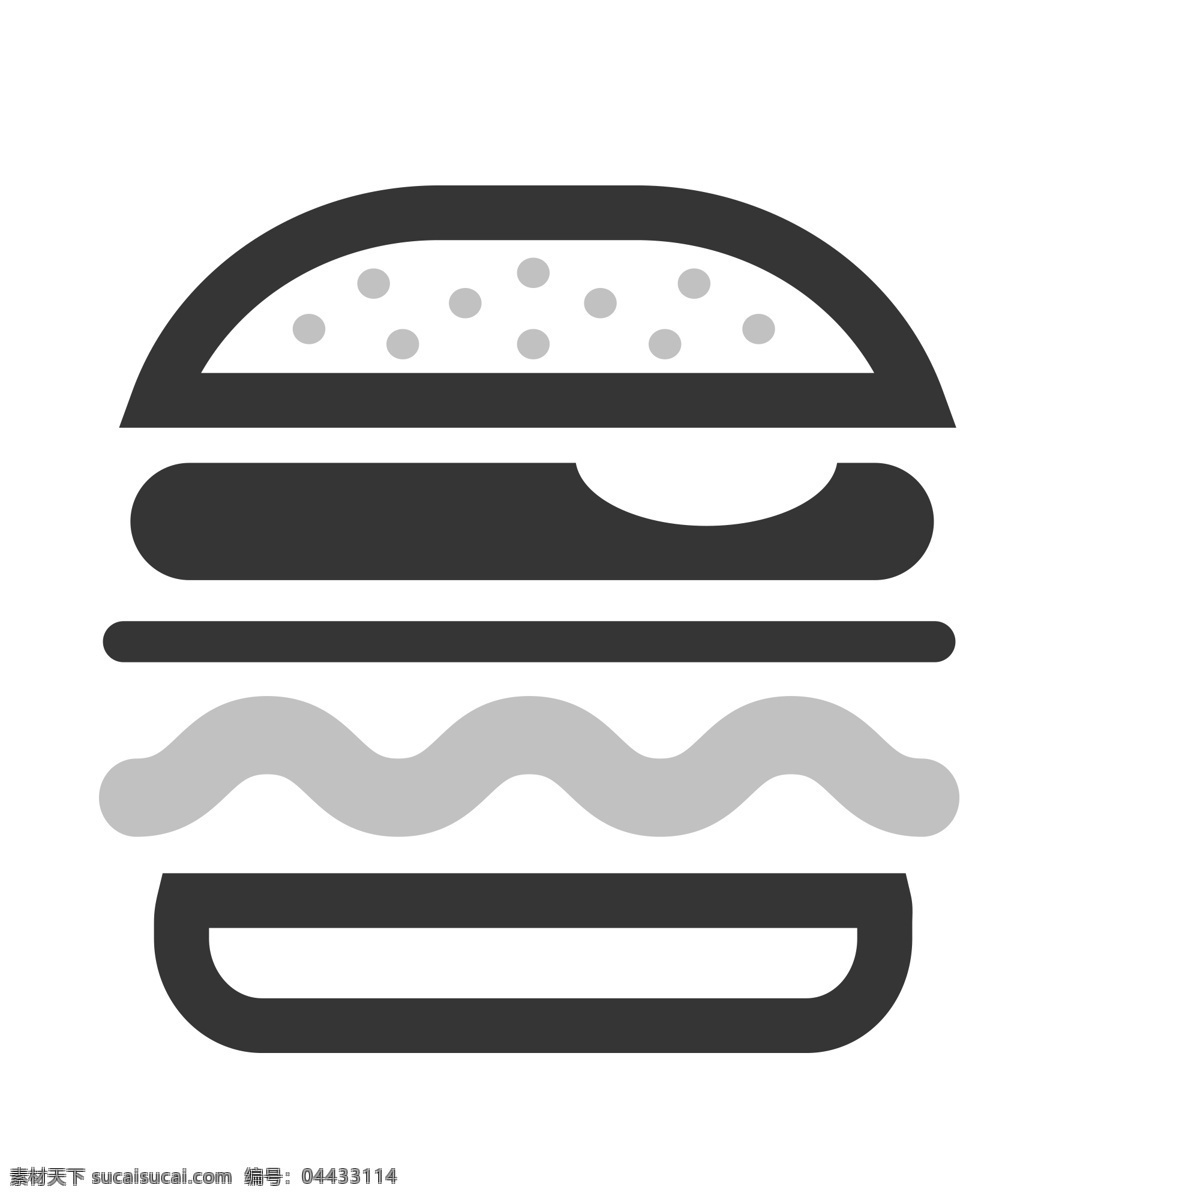 扁平化汉堡 汉堡包 扁平化ui ui图标 手机图标 界面ui 网页ui h5图标